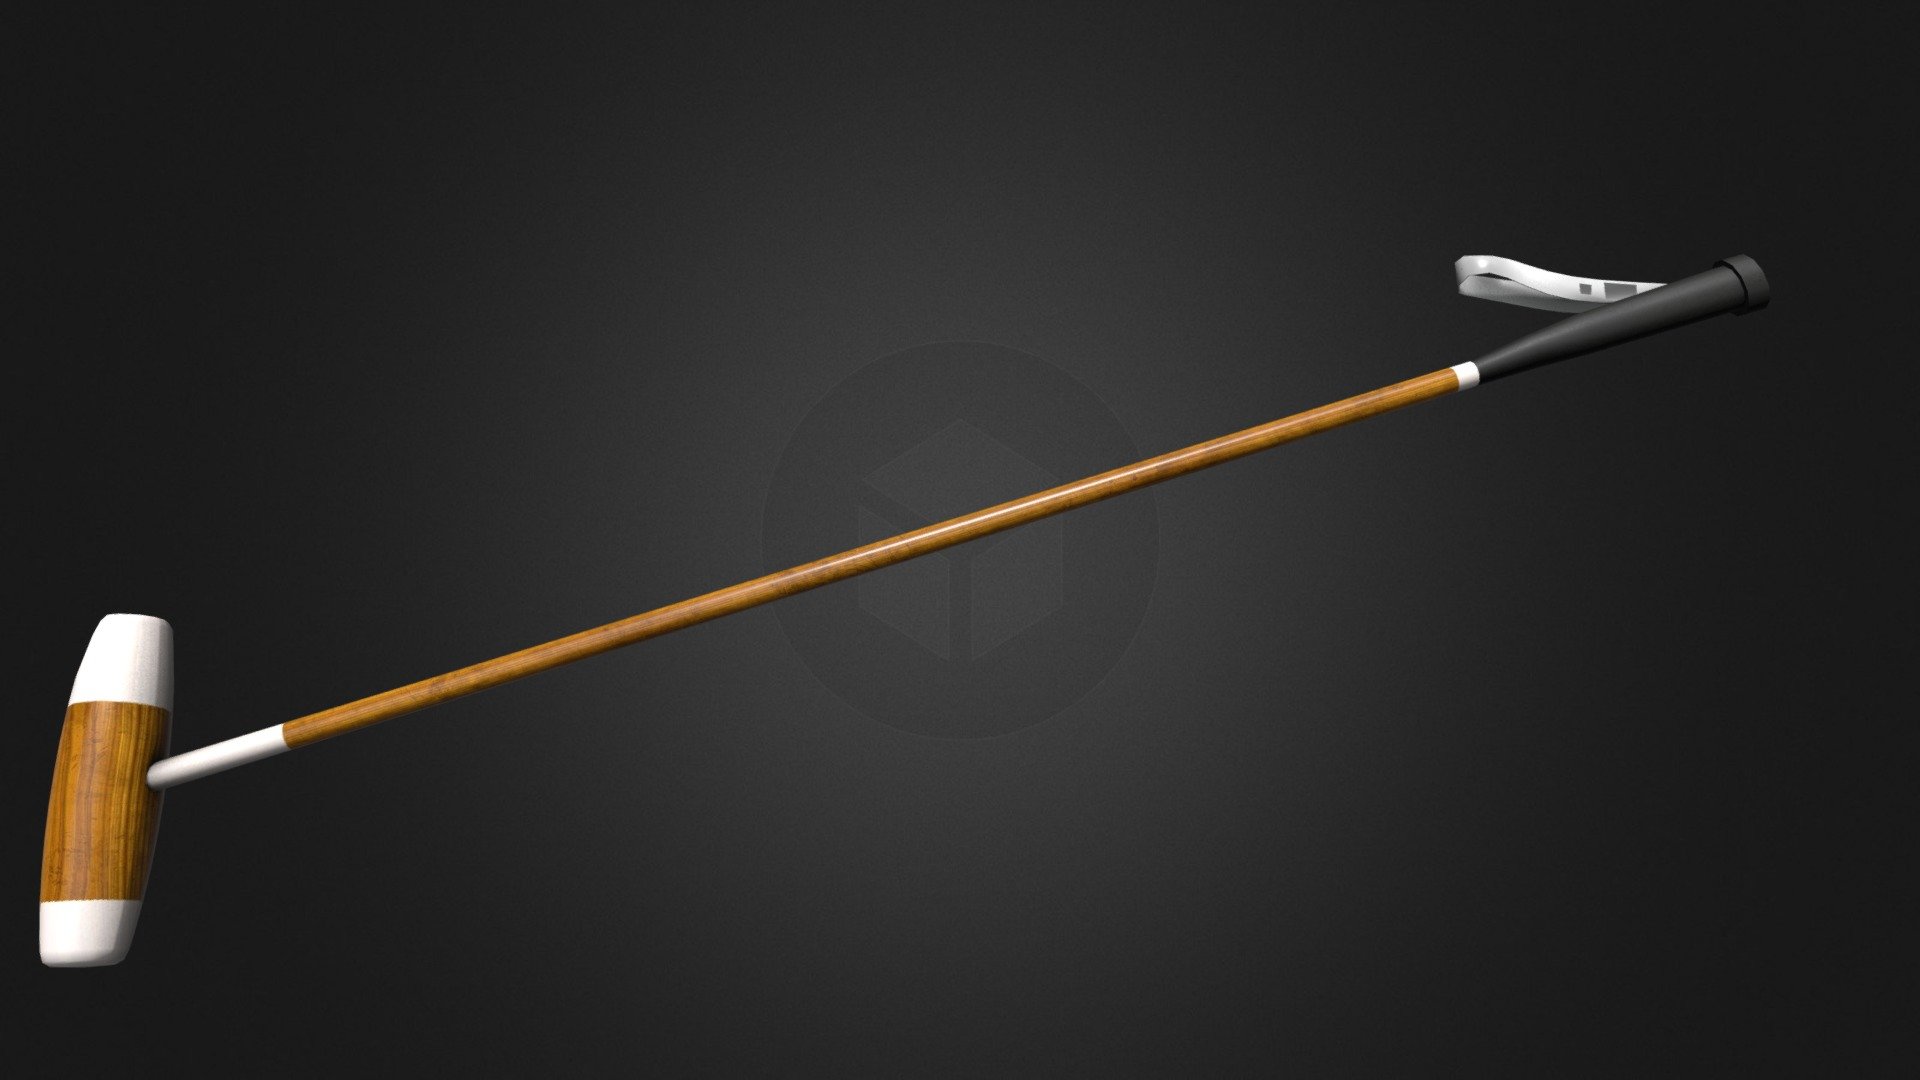 JLC Mallet jockey stick - 3D model by CXR Agency (@CXRAgency) 3d model